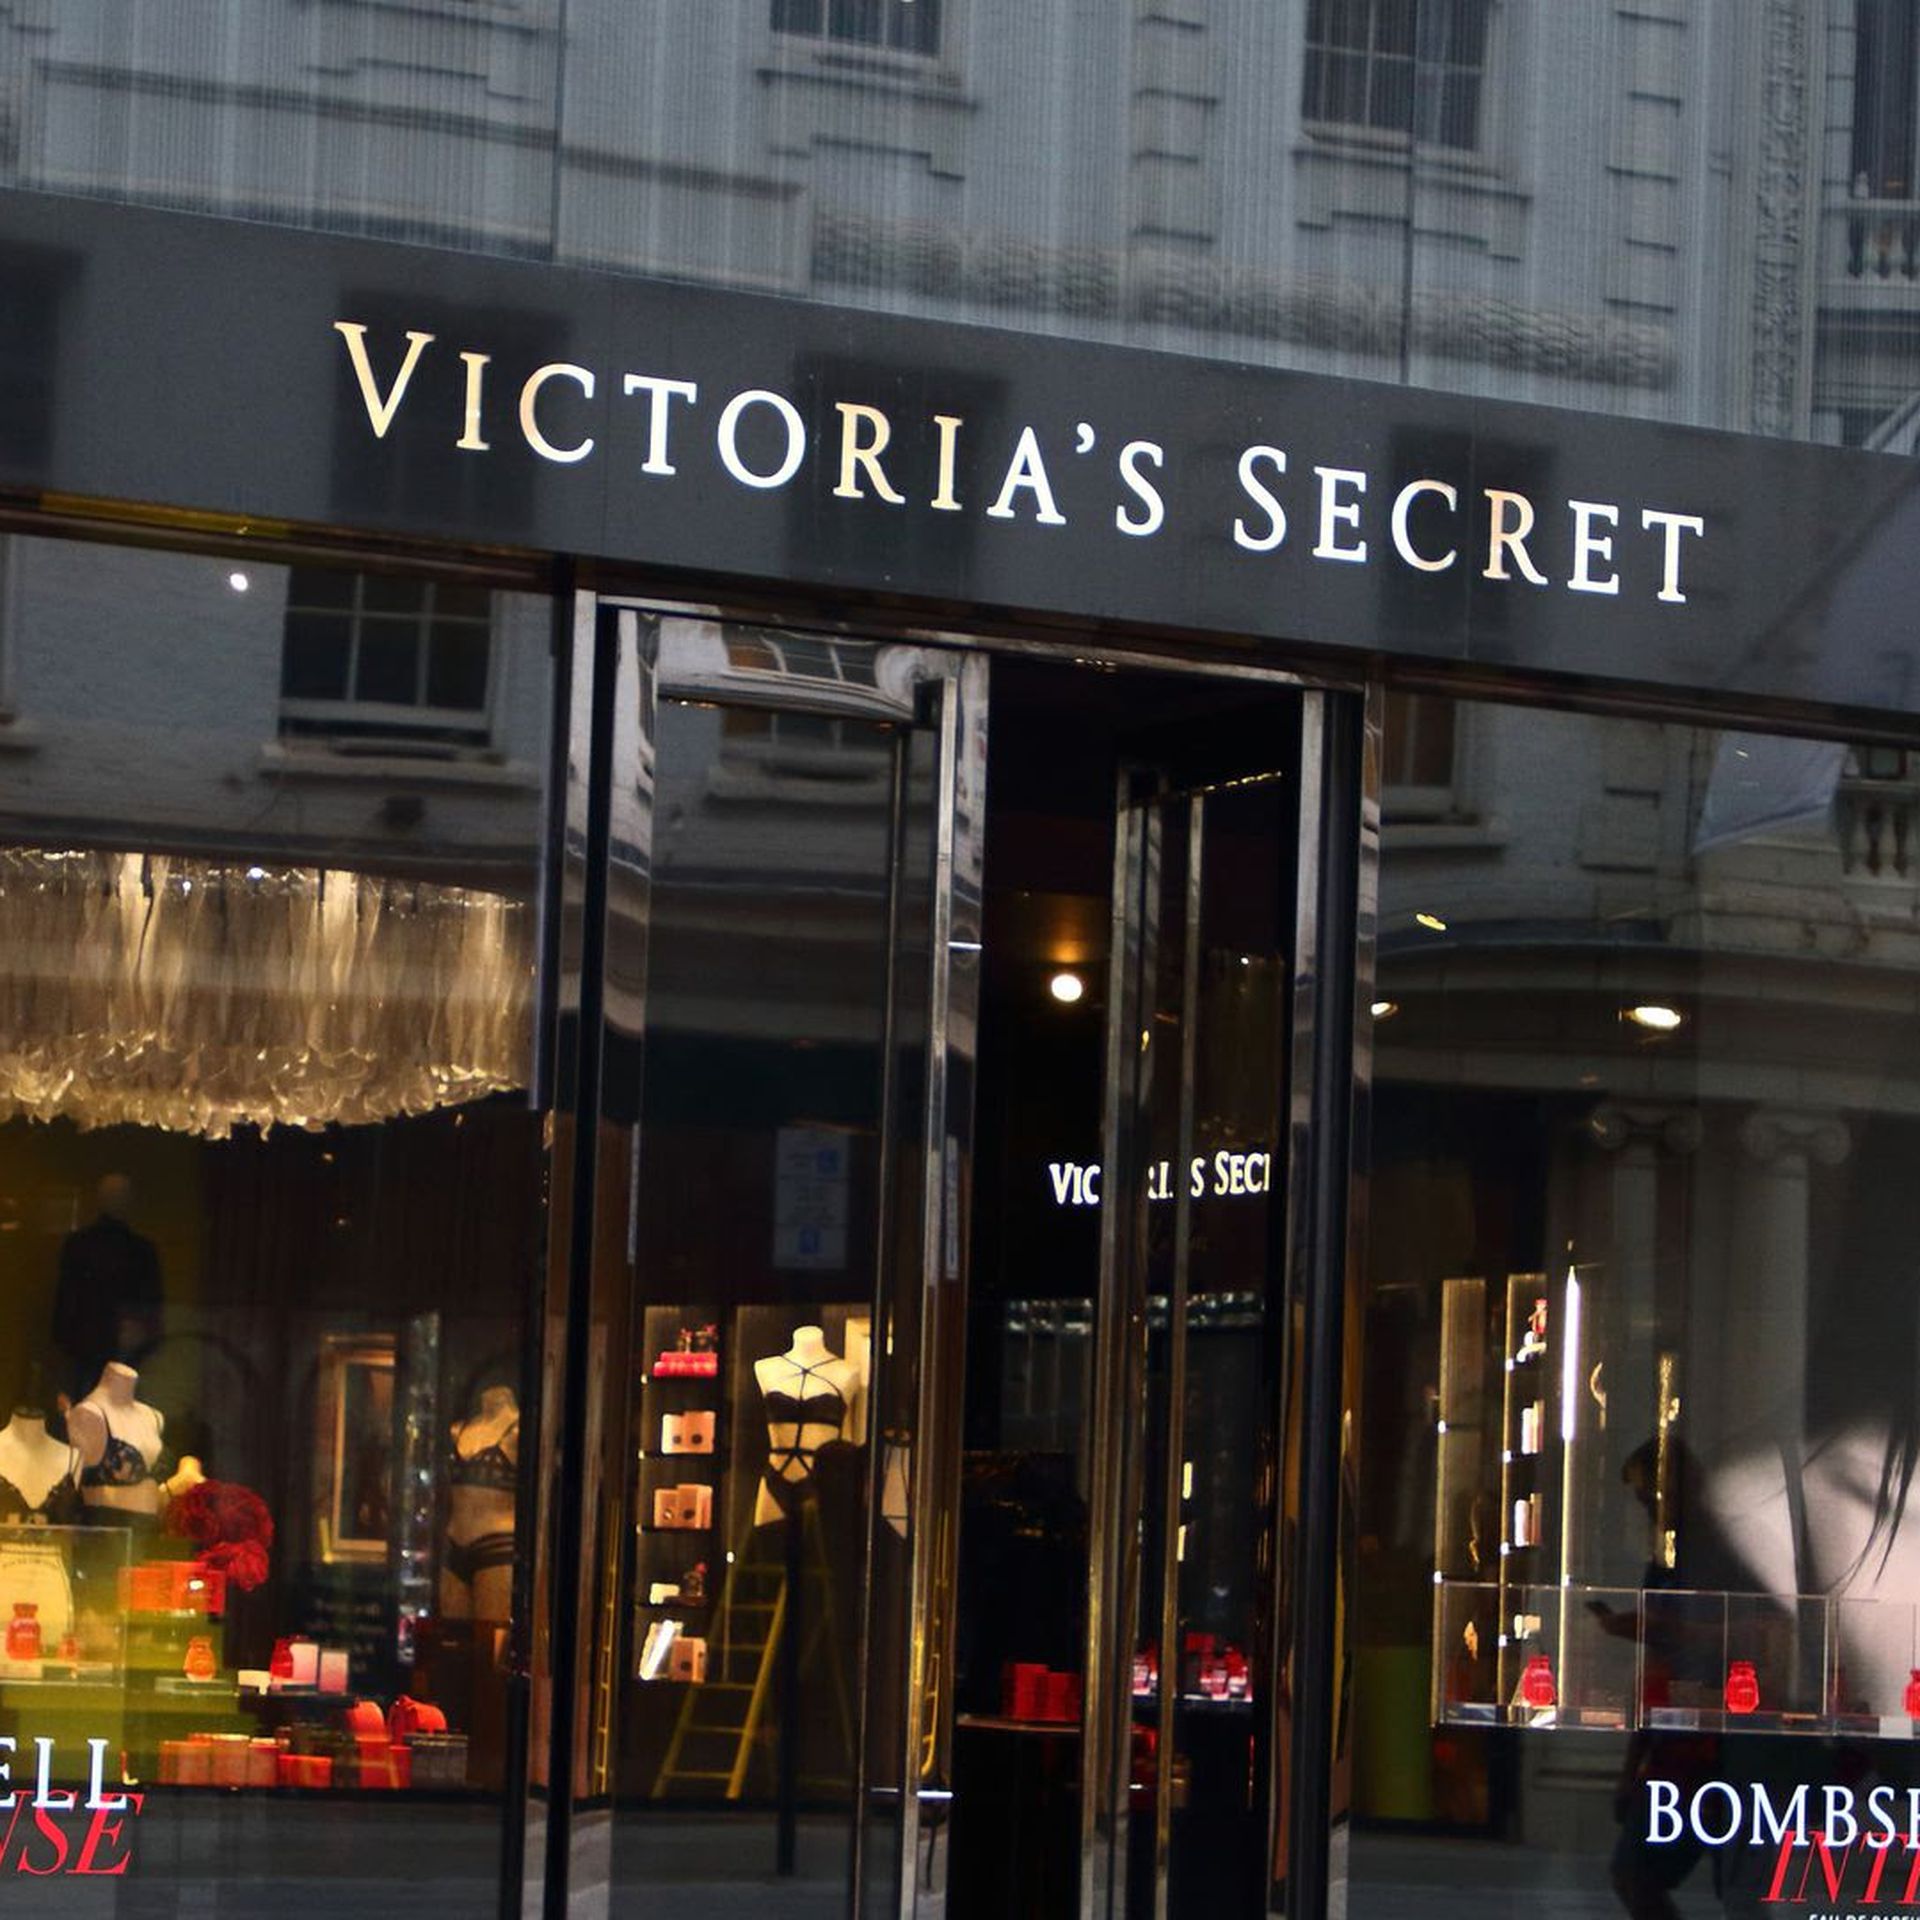 Victoria's Secret (3111 West Chandler Boulevard), Delivered by